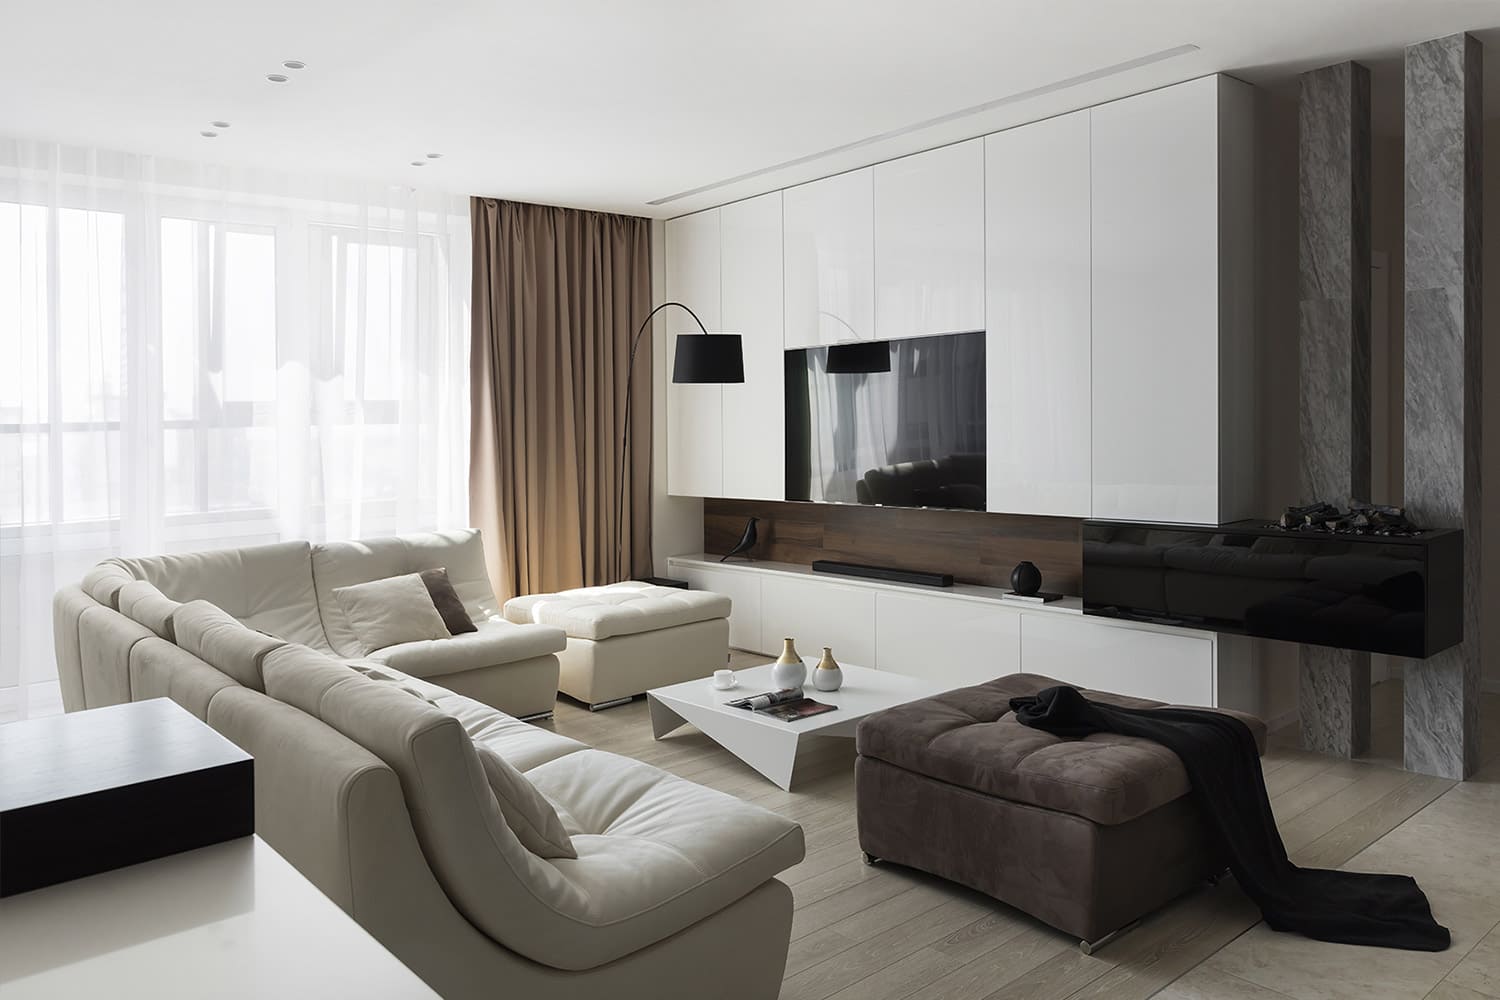 Телевизор над камином в интерьере гостиной: интересные решения для стильной обстановки